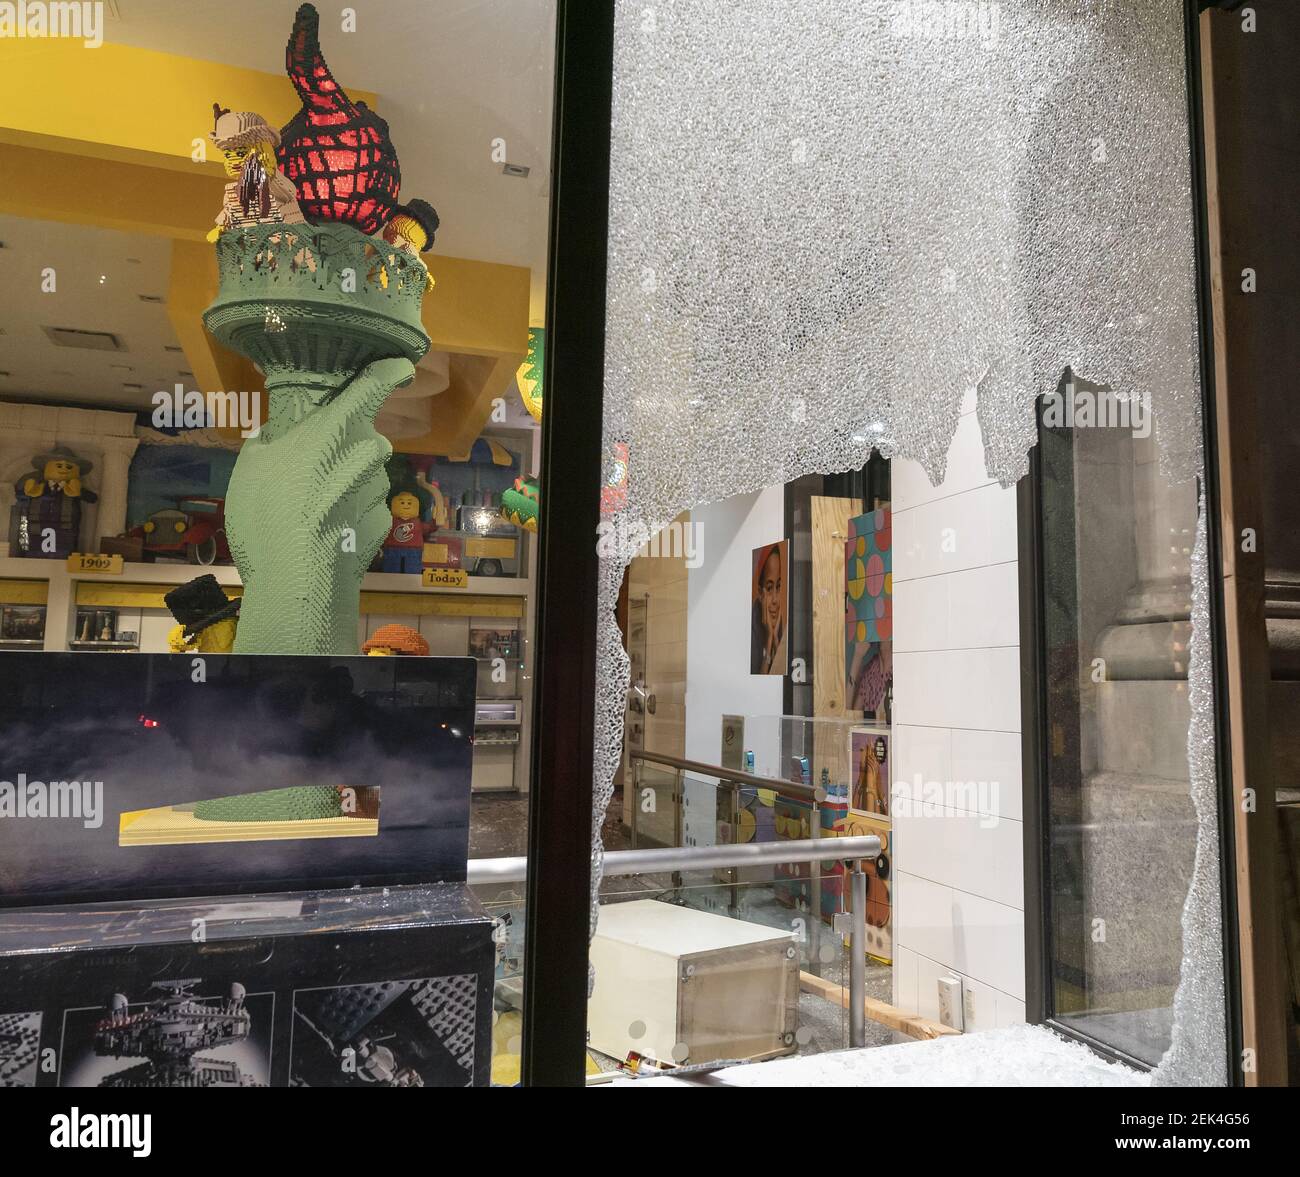 Las protestas se convierten en saqueos y destrucciones en Manhattan antes  de que se imponga el toque de queda. Vista de la tienda Lego ventanas rotas  y saqueado en Manhattan, Nueva York